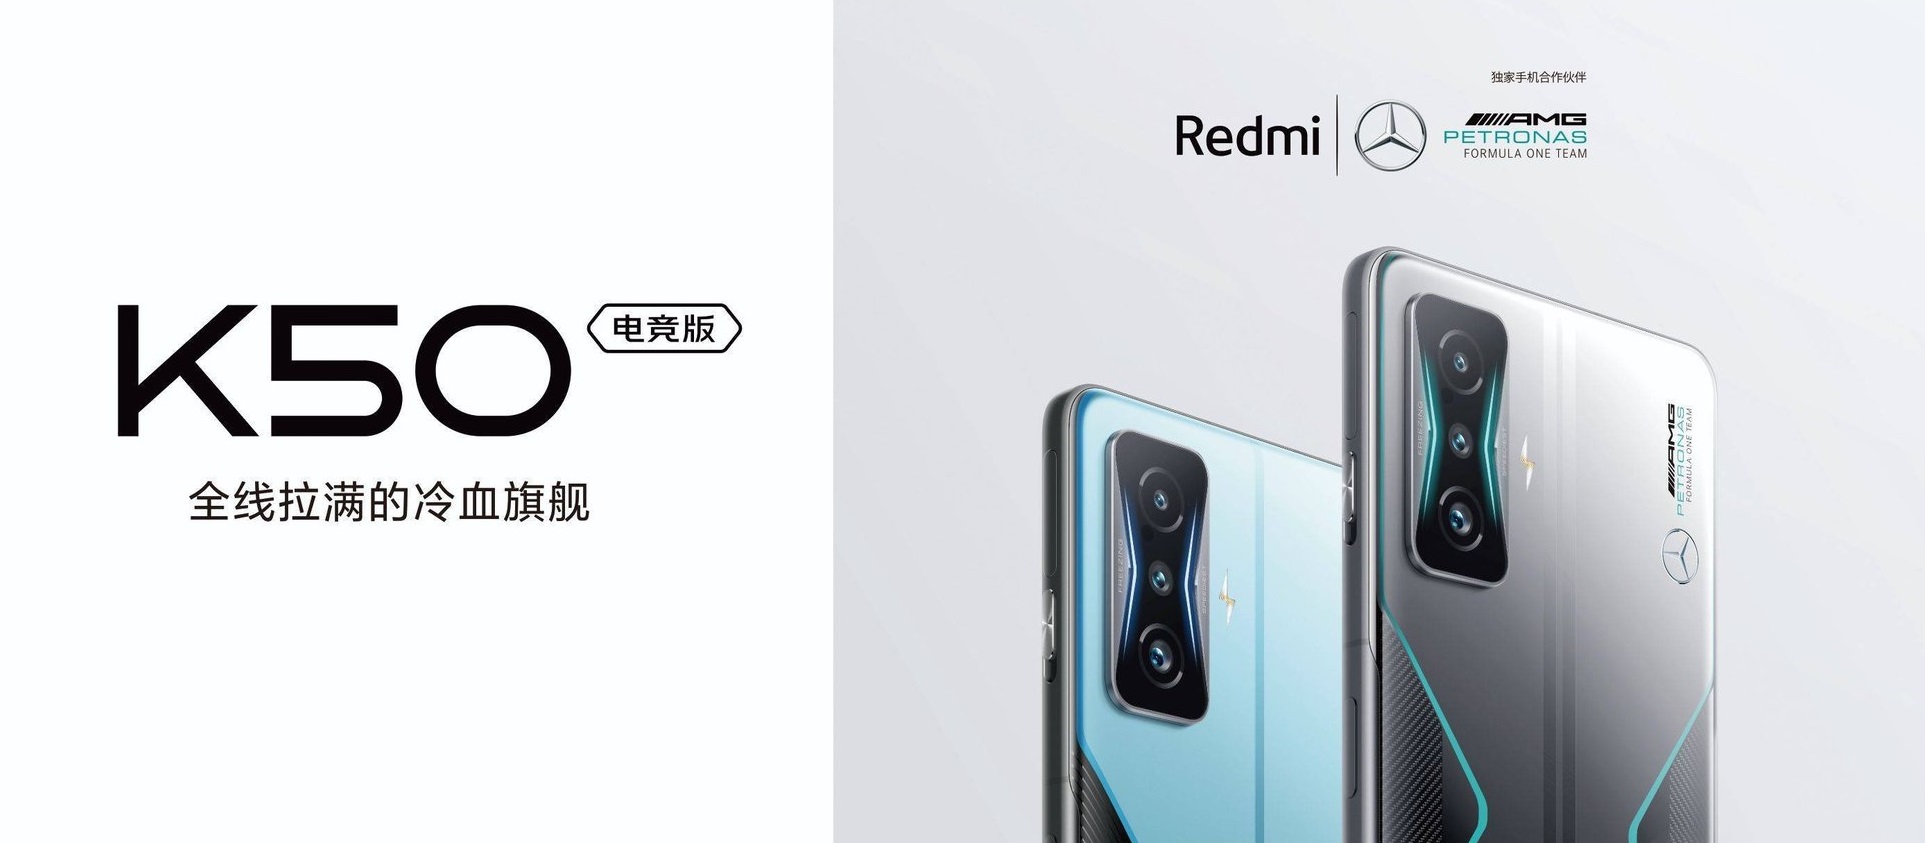 Xiaomi wird in Zusammenarbeit mit Mercedes-Benz ein Gaming-Smartphone herausbringen